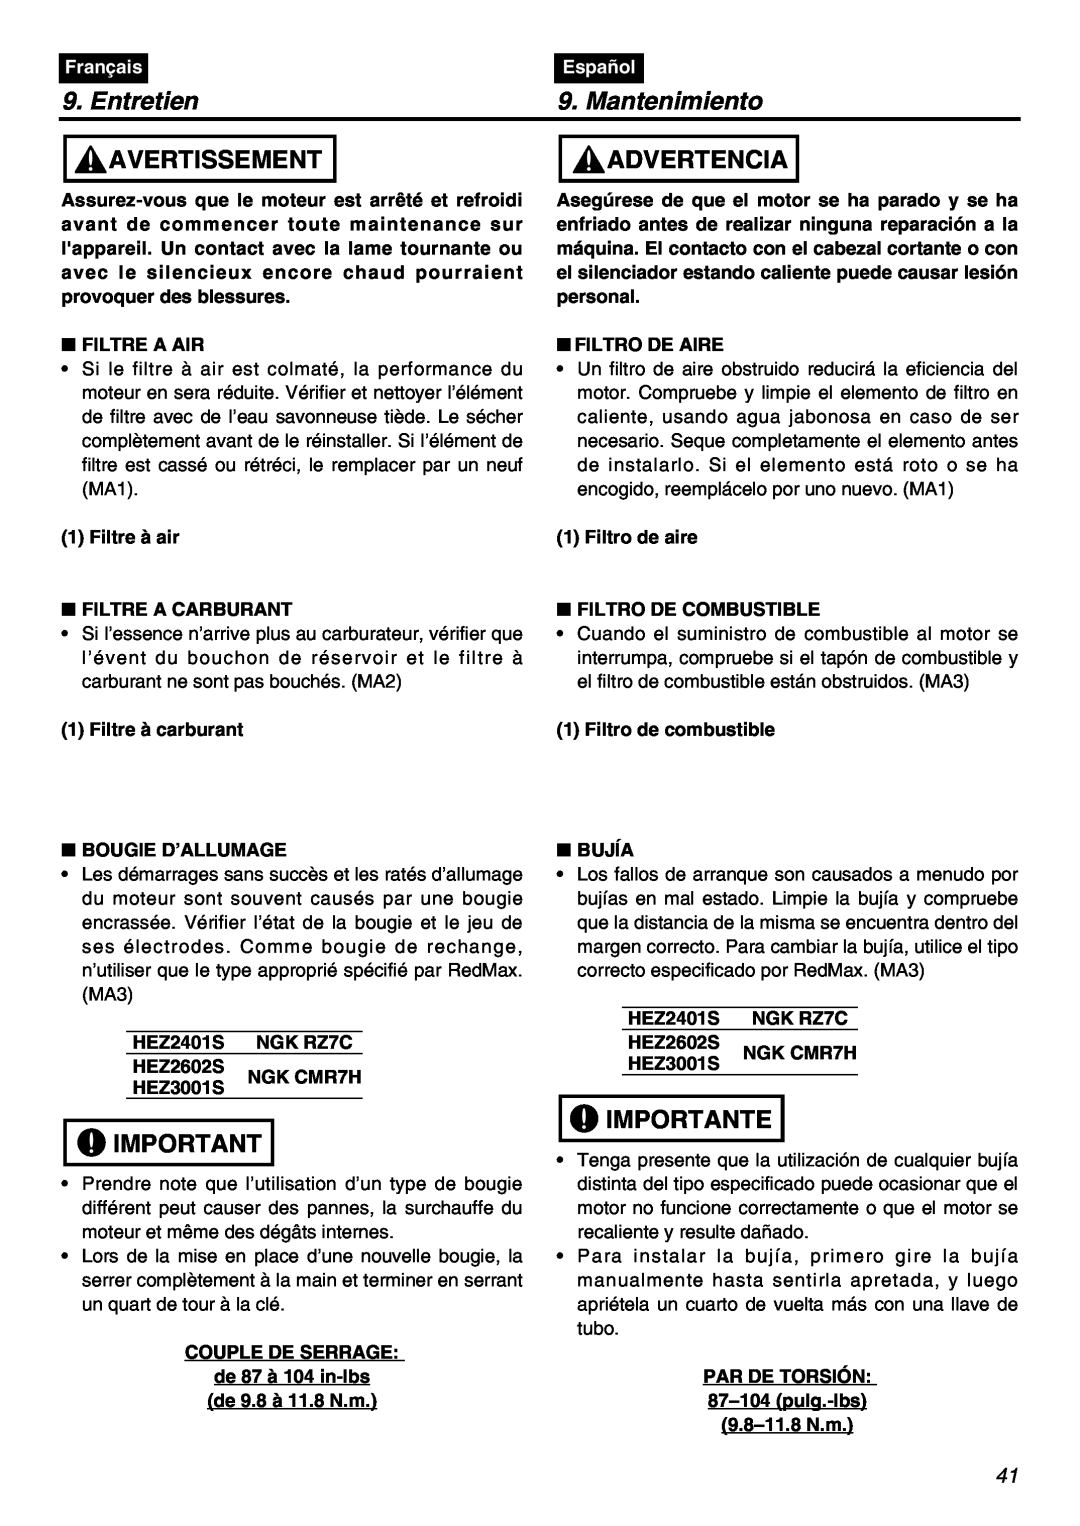 RedMax HEZ2401S, HEZ3001S, HEZ2602S Entretien, Mantenimiento, Avertissement, Advertencia, Importante, Français, Español 